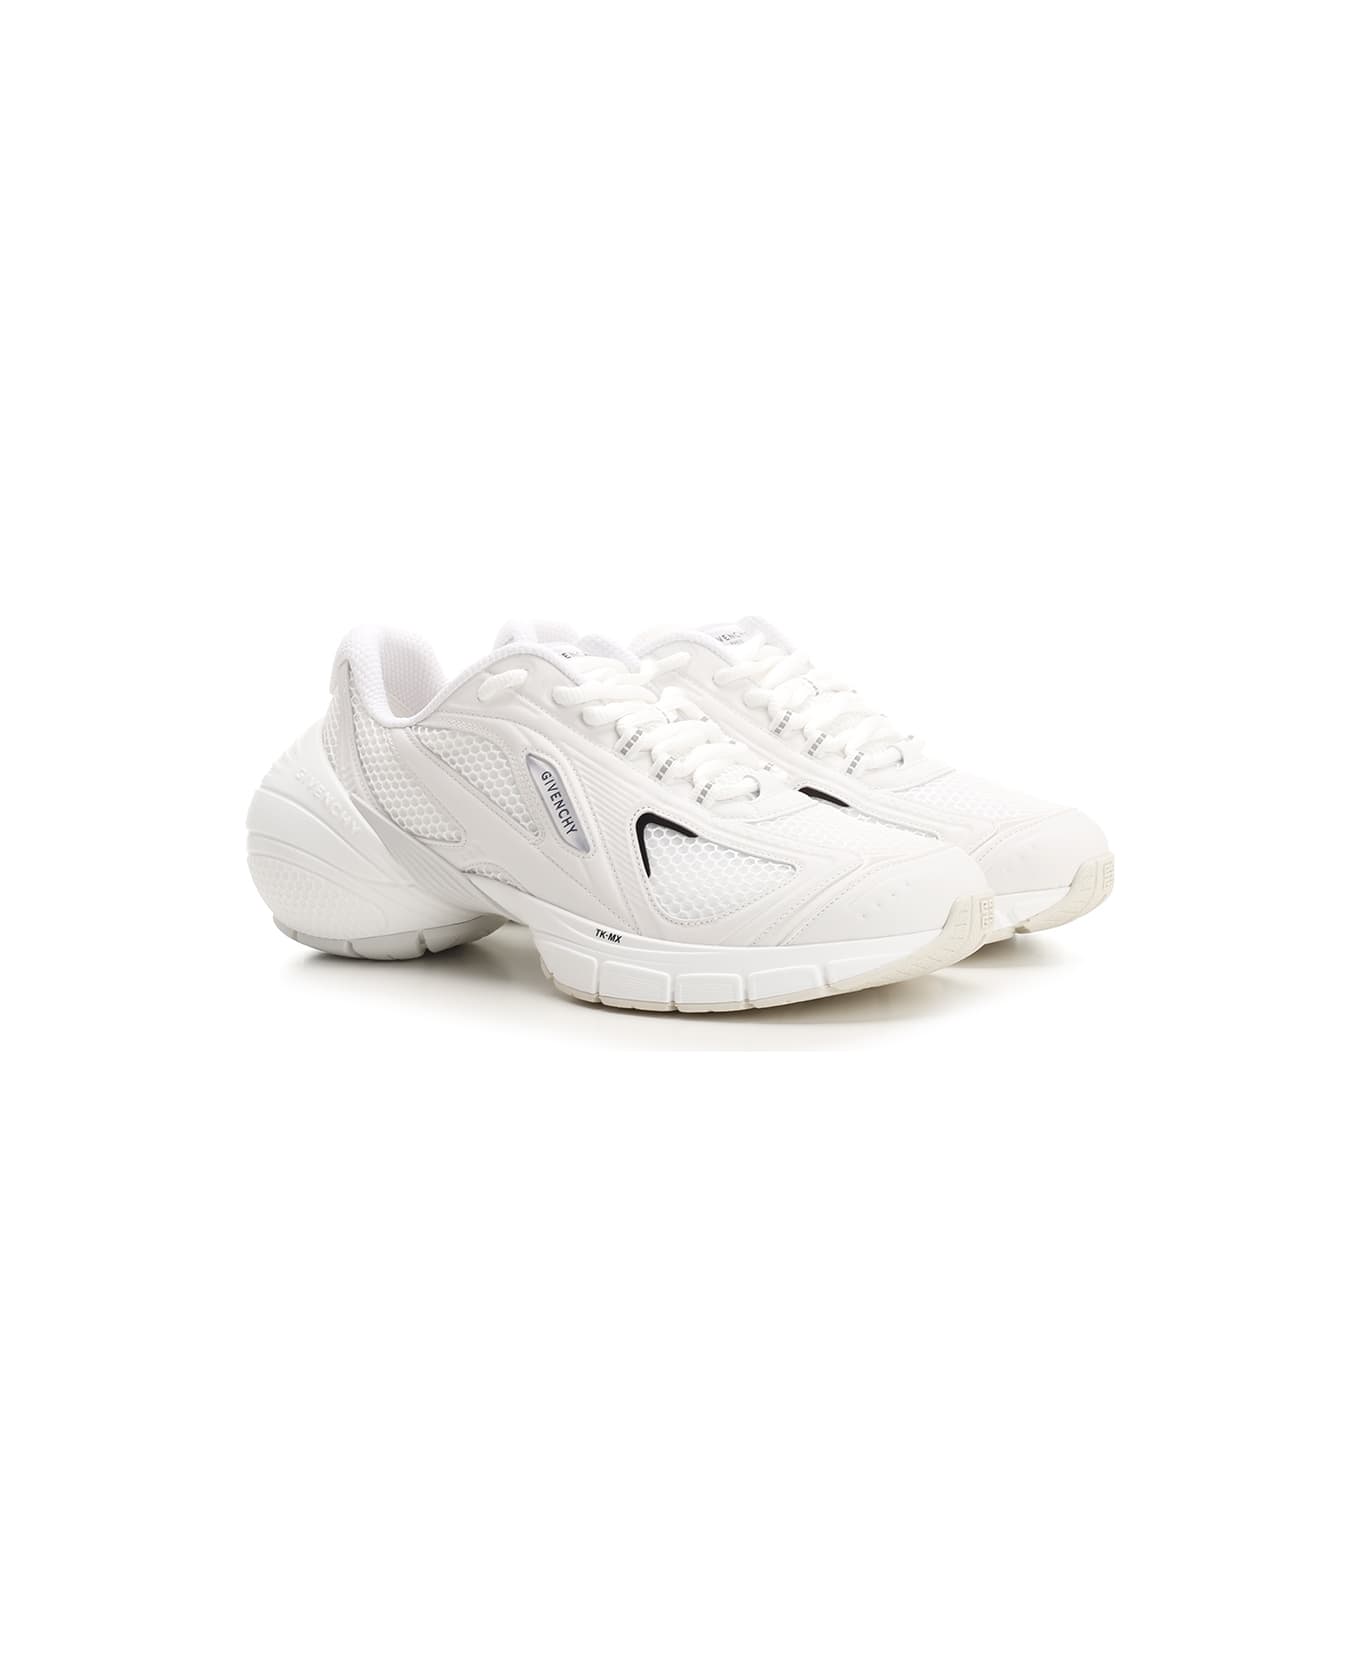 Givenchy Tk-mx Runner Sneakers - White スニーカー